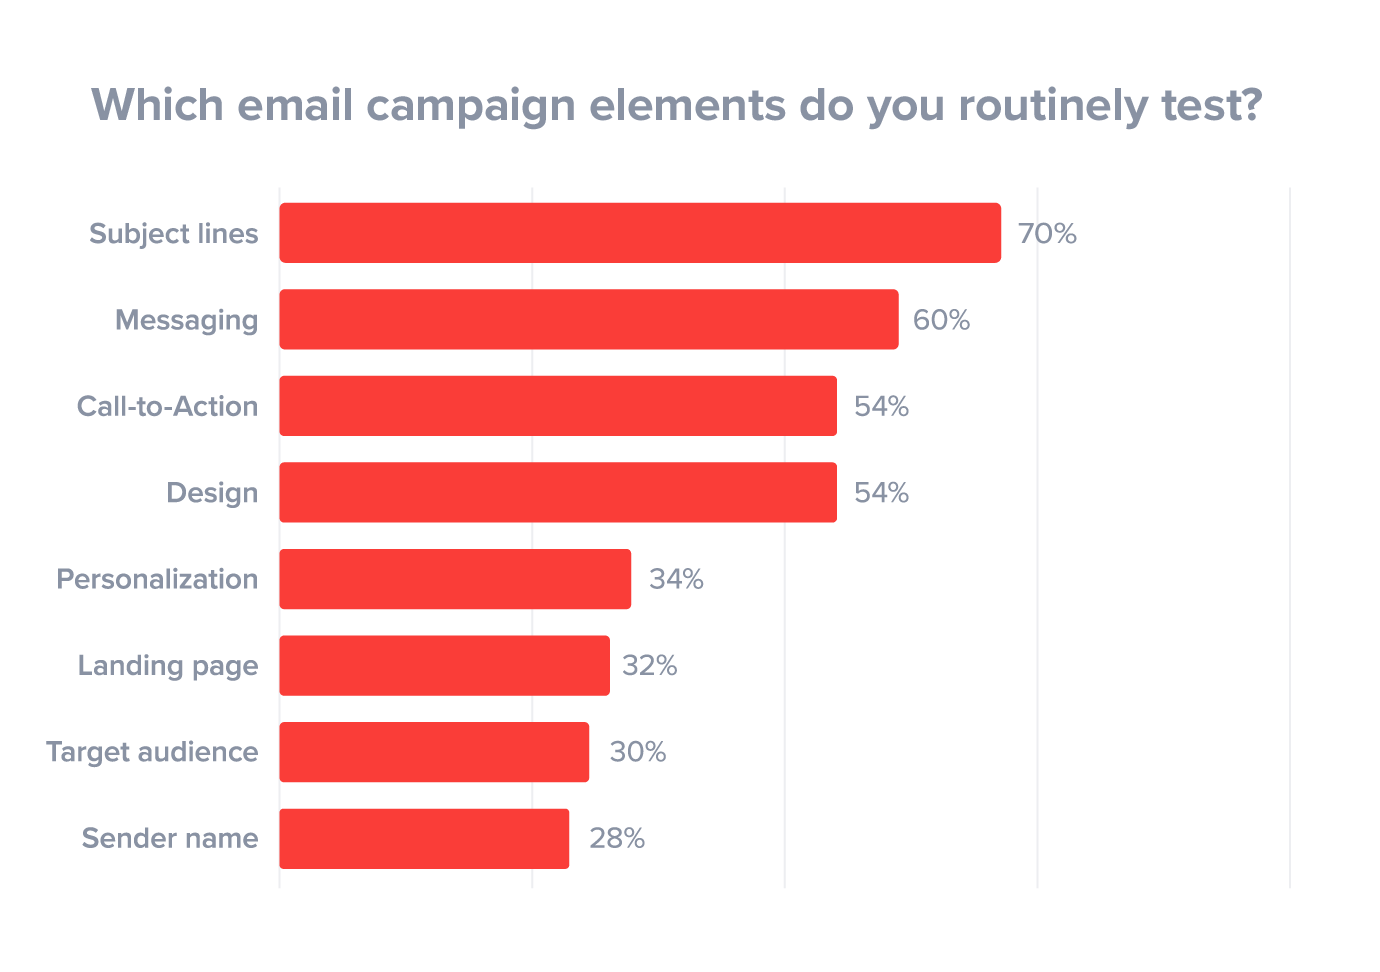 La forma de prueba de sujeto más común en el marketing por correo electrónico